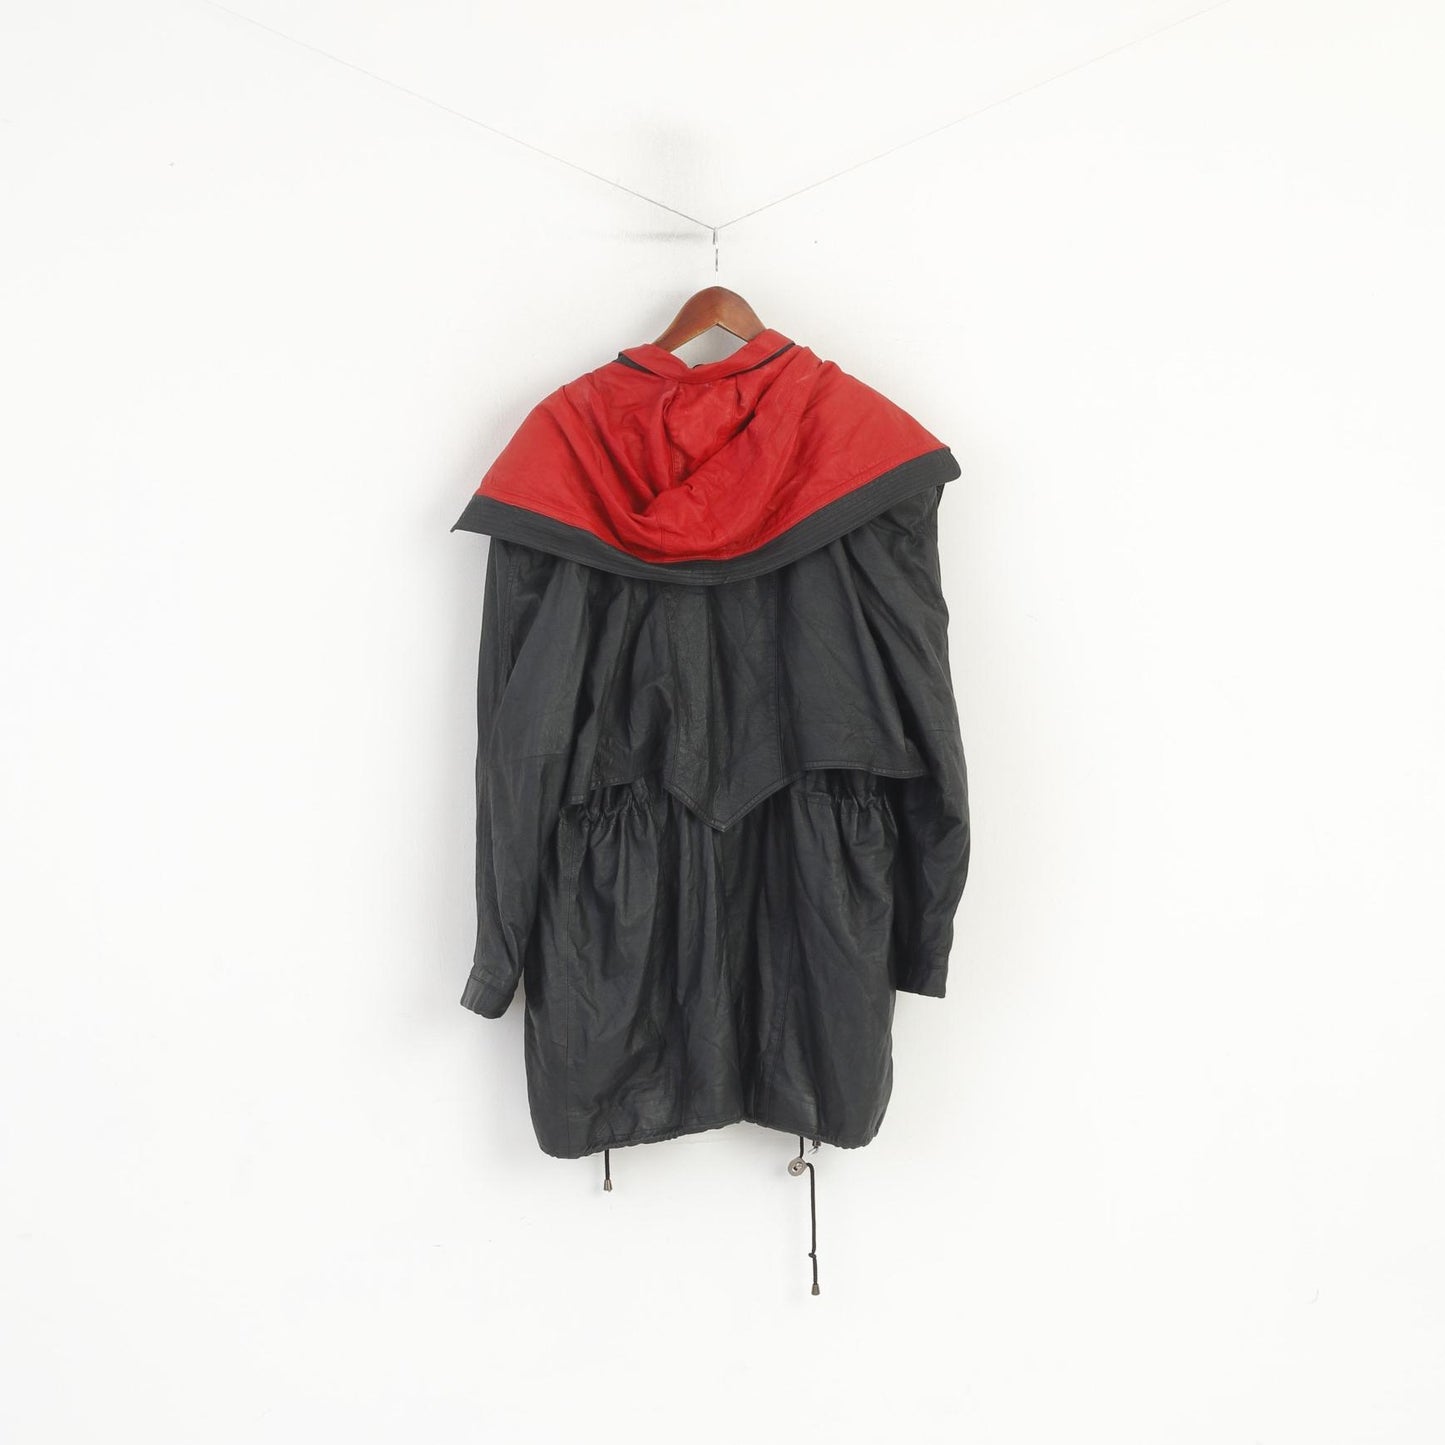 Vintage Women L Leather Jacket Black Red Hood Shoulder Pads Retro Style Parka